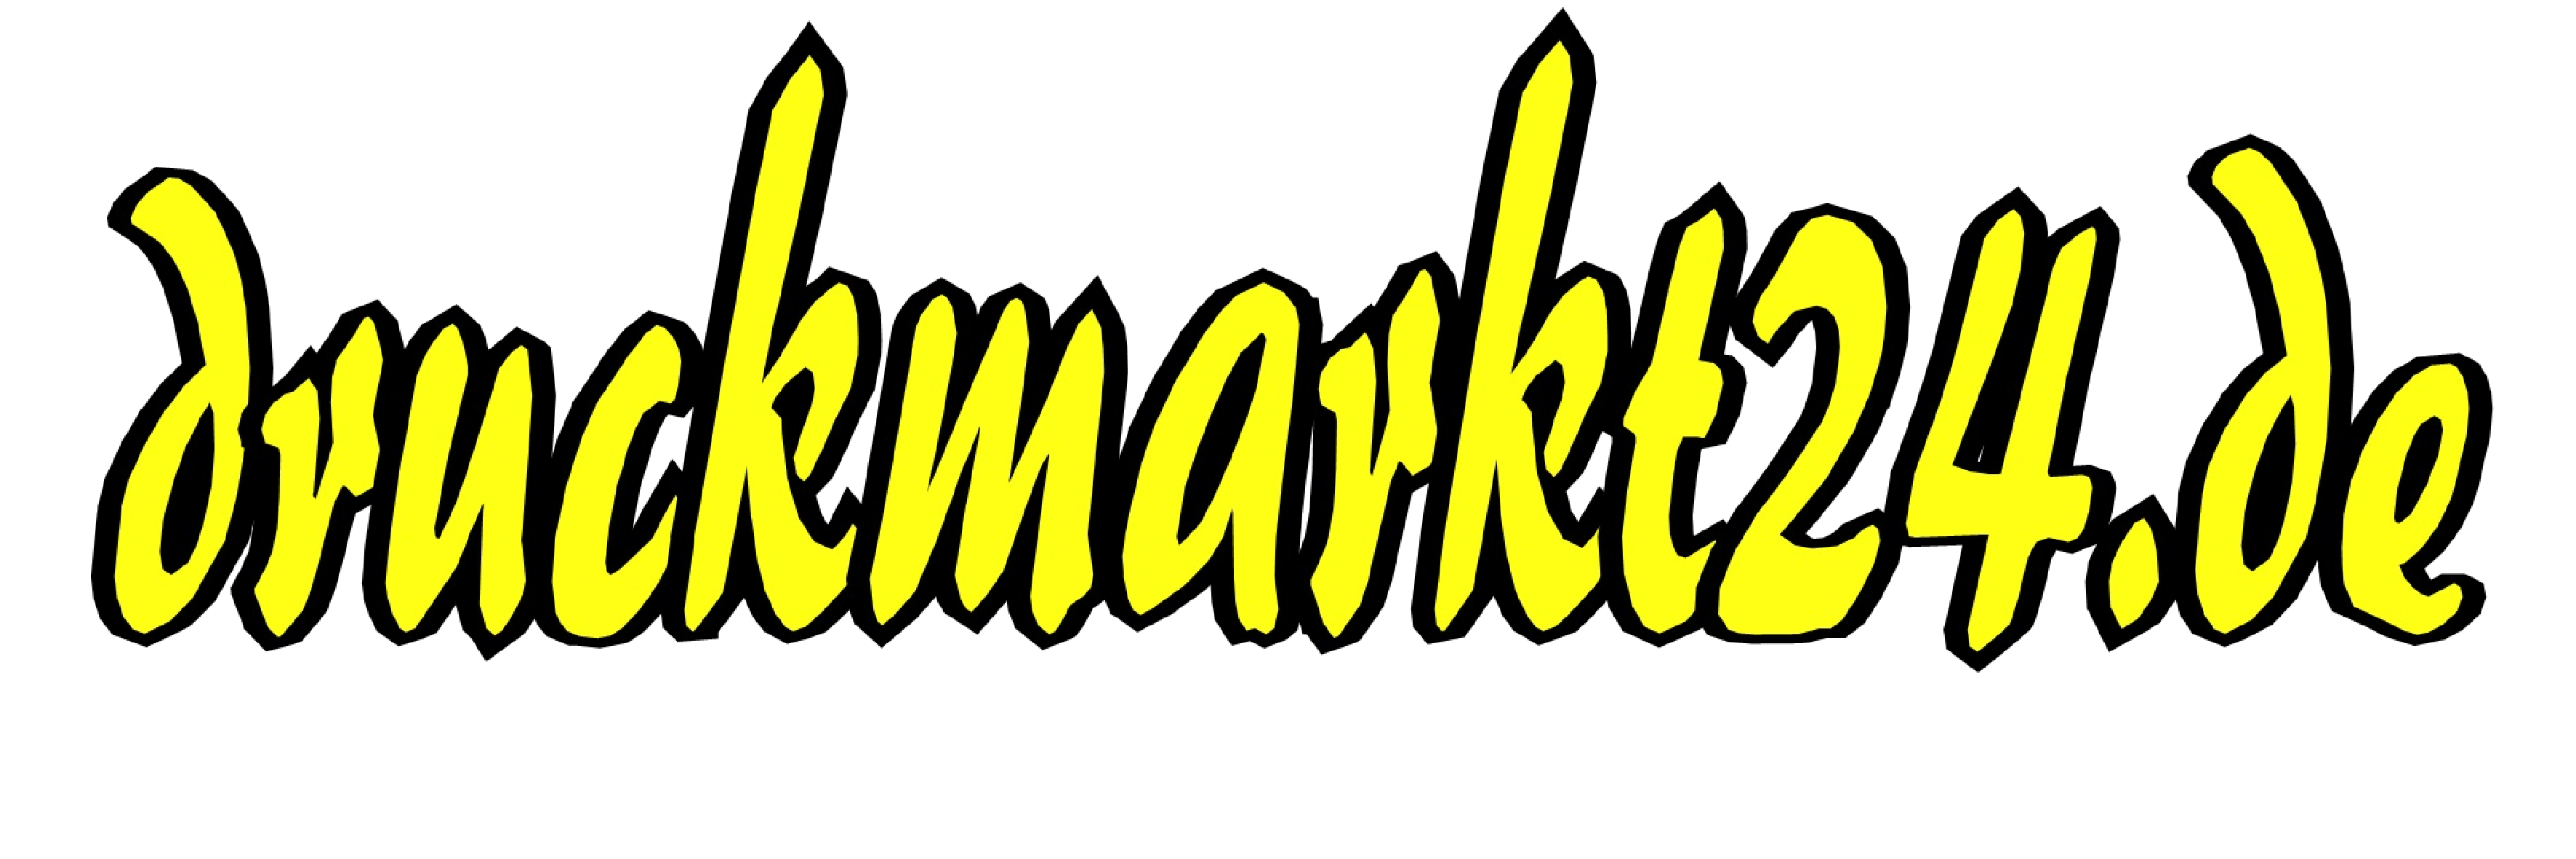 druckmarkt24